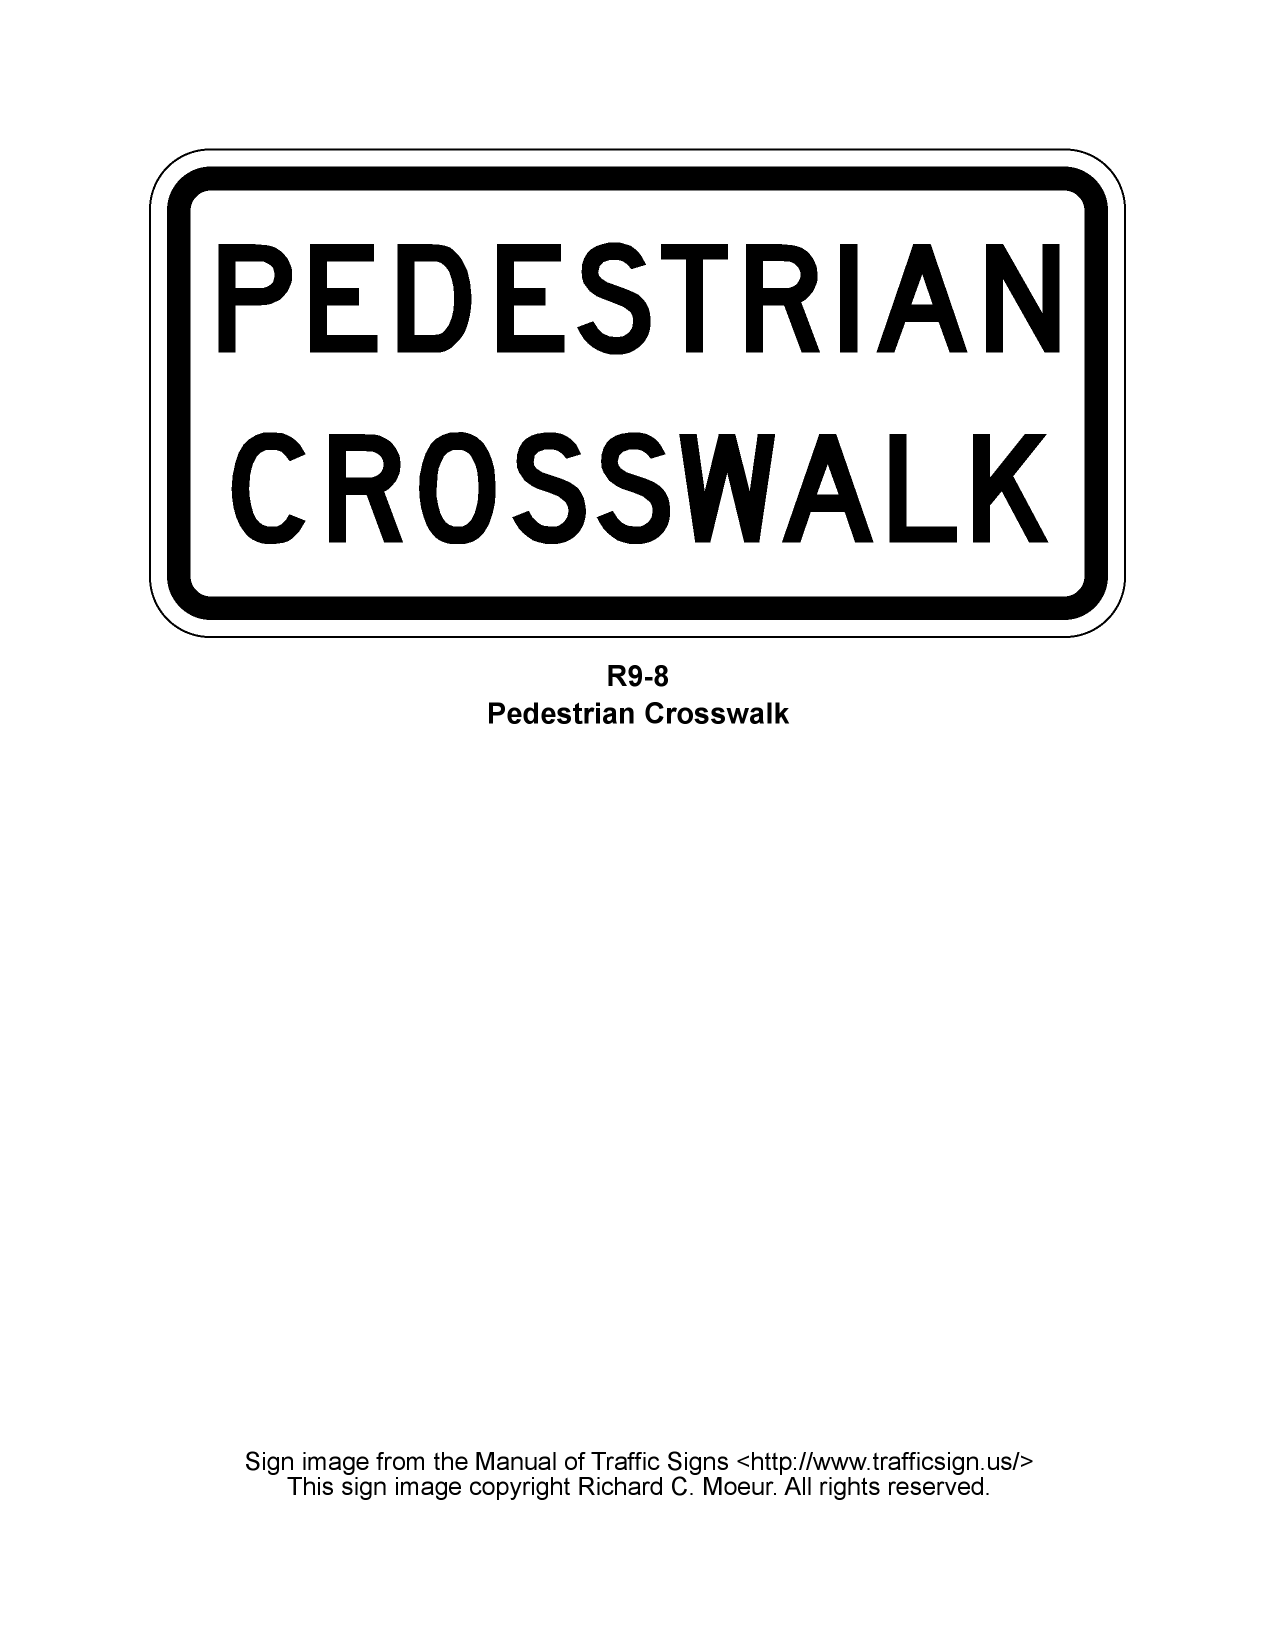 No Pedestrian Crossing (symbol) (R9-3)